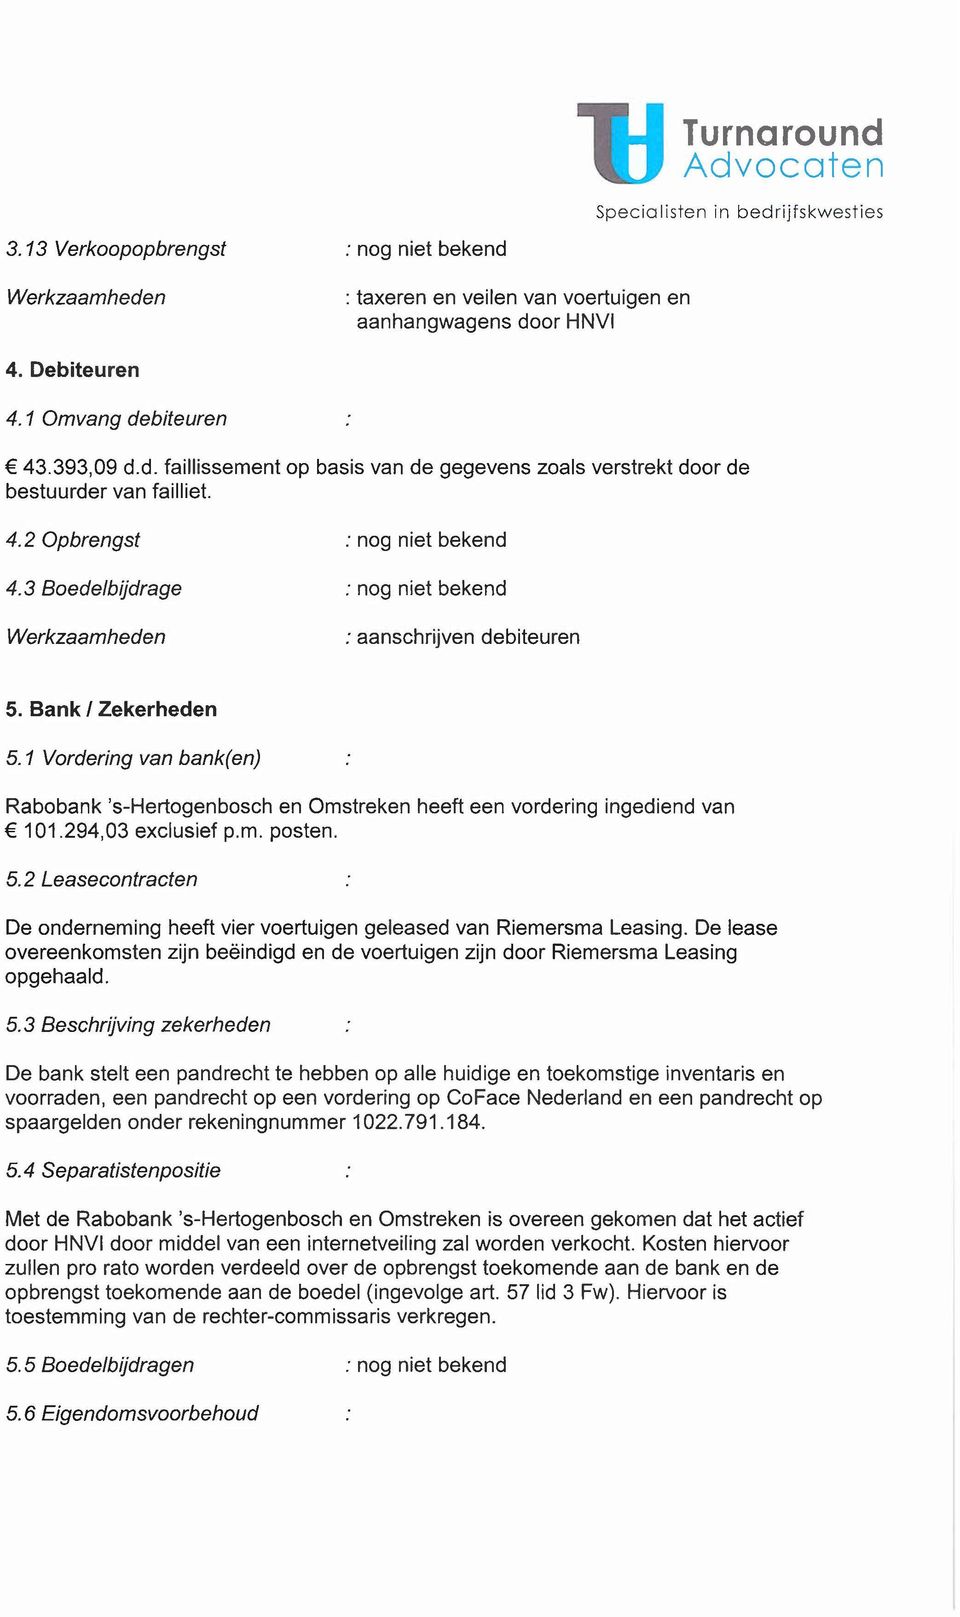 1 Vordering van bank(en) Rabobank 's-hertogenbosch en Omstreken heeft een vordering ingediend van 101.294,03 exclusief p.m. posten. 5.